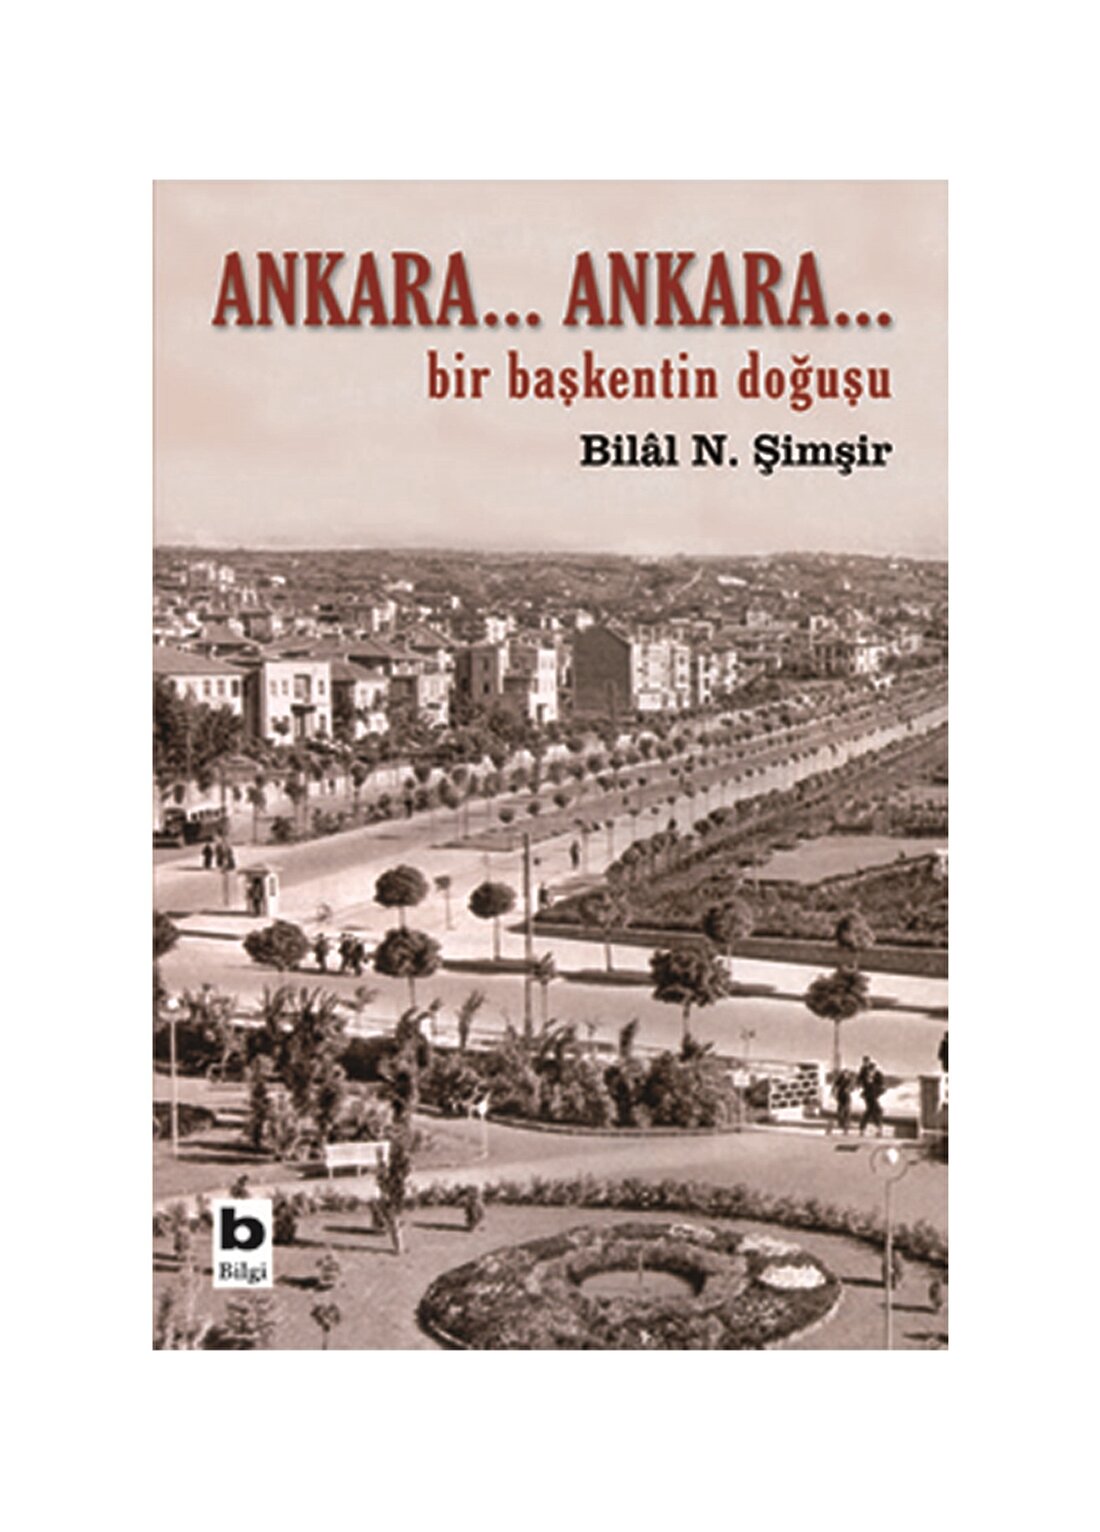 Bilgi Kitap Bilâl N. Şimşir - Ankara...Ankara...